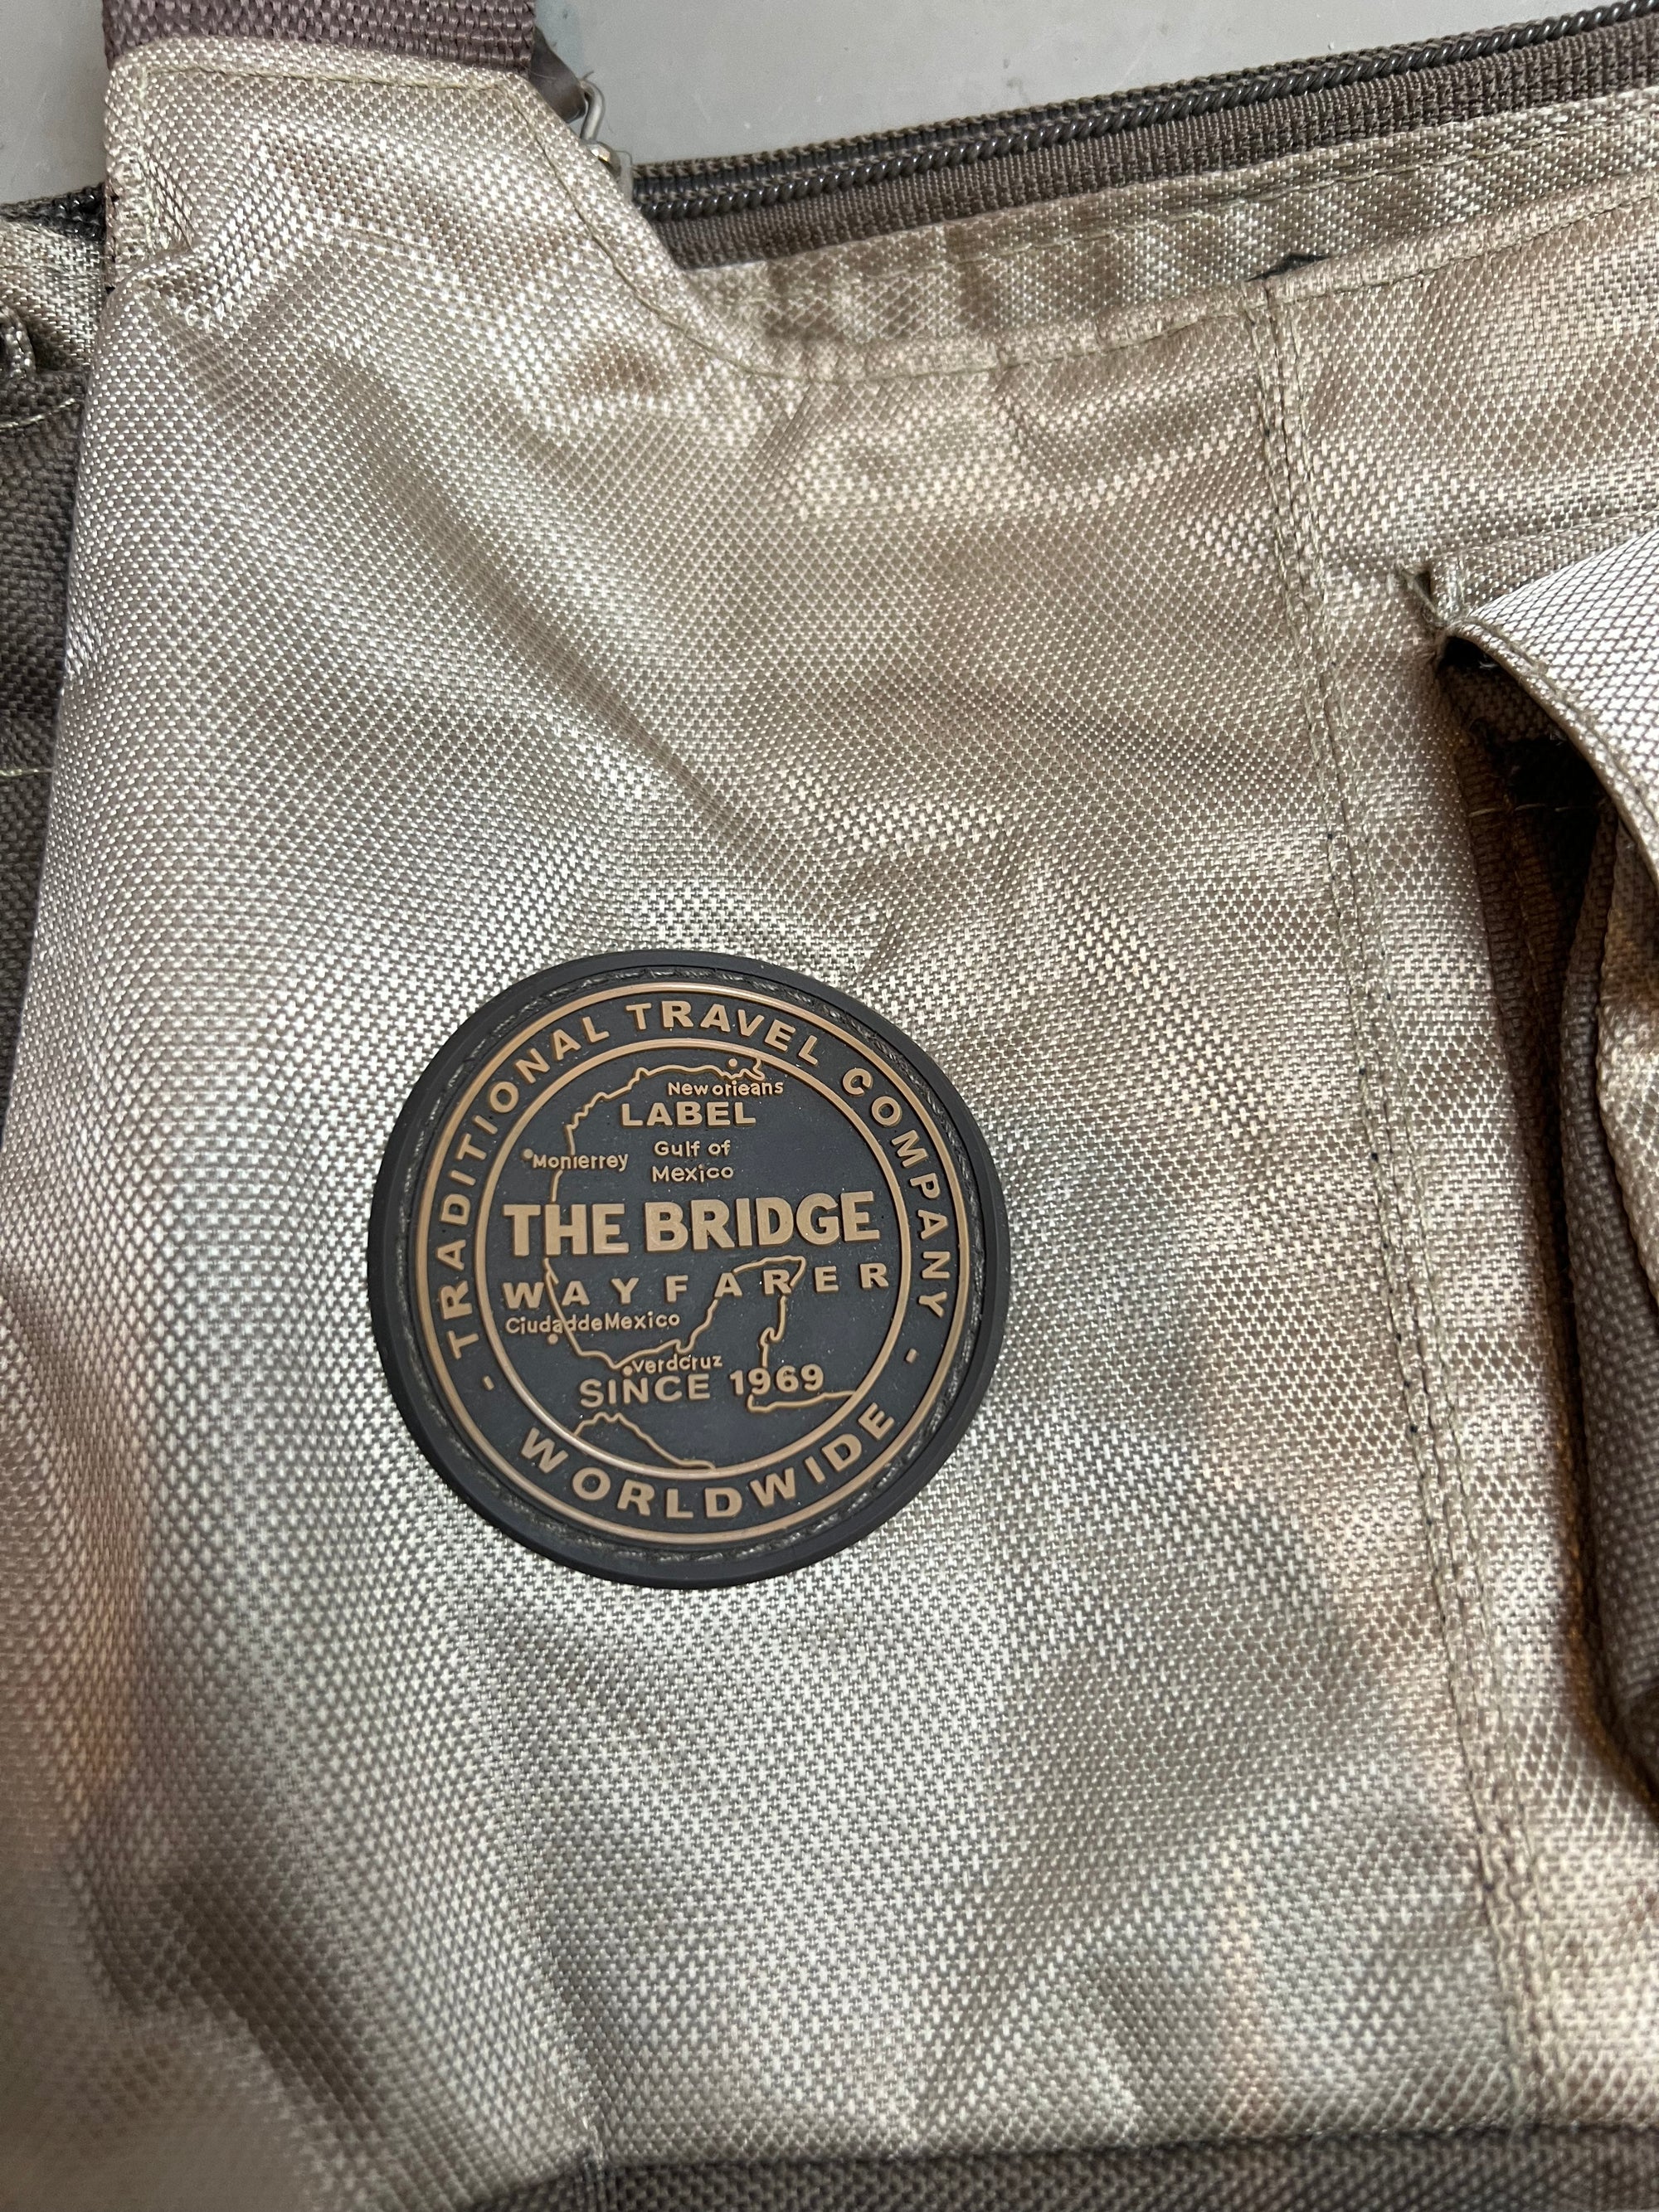 Produkt Bild der Vintage The Bridge Khaki Multipocket Bag von vorne Detail branding 